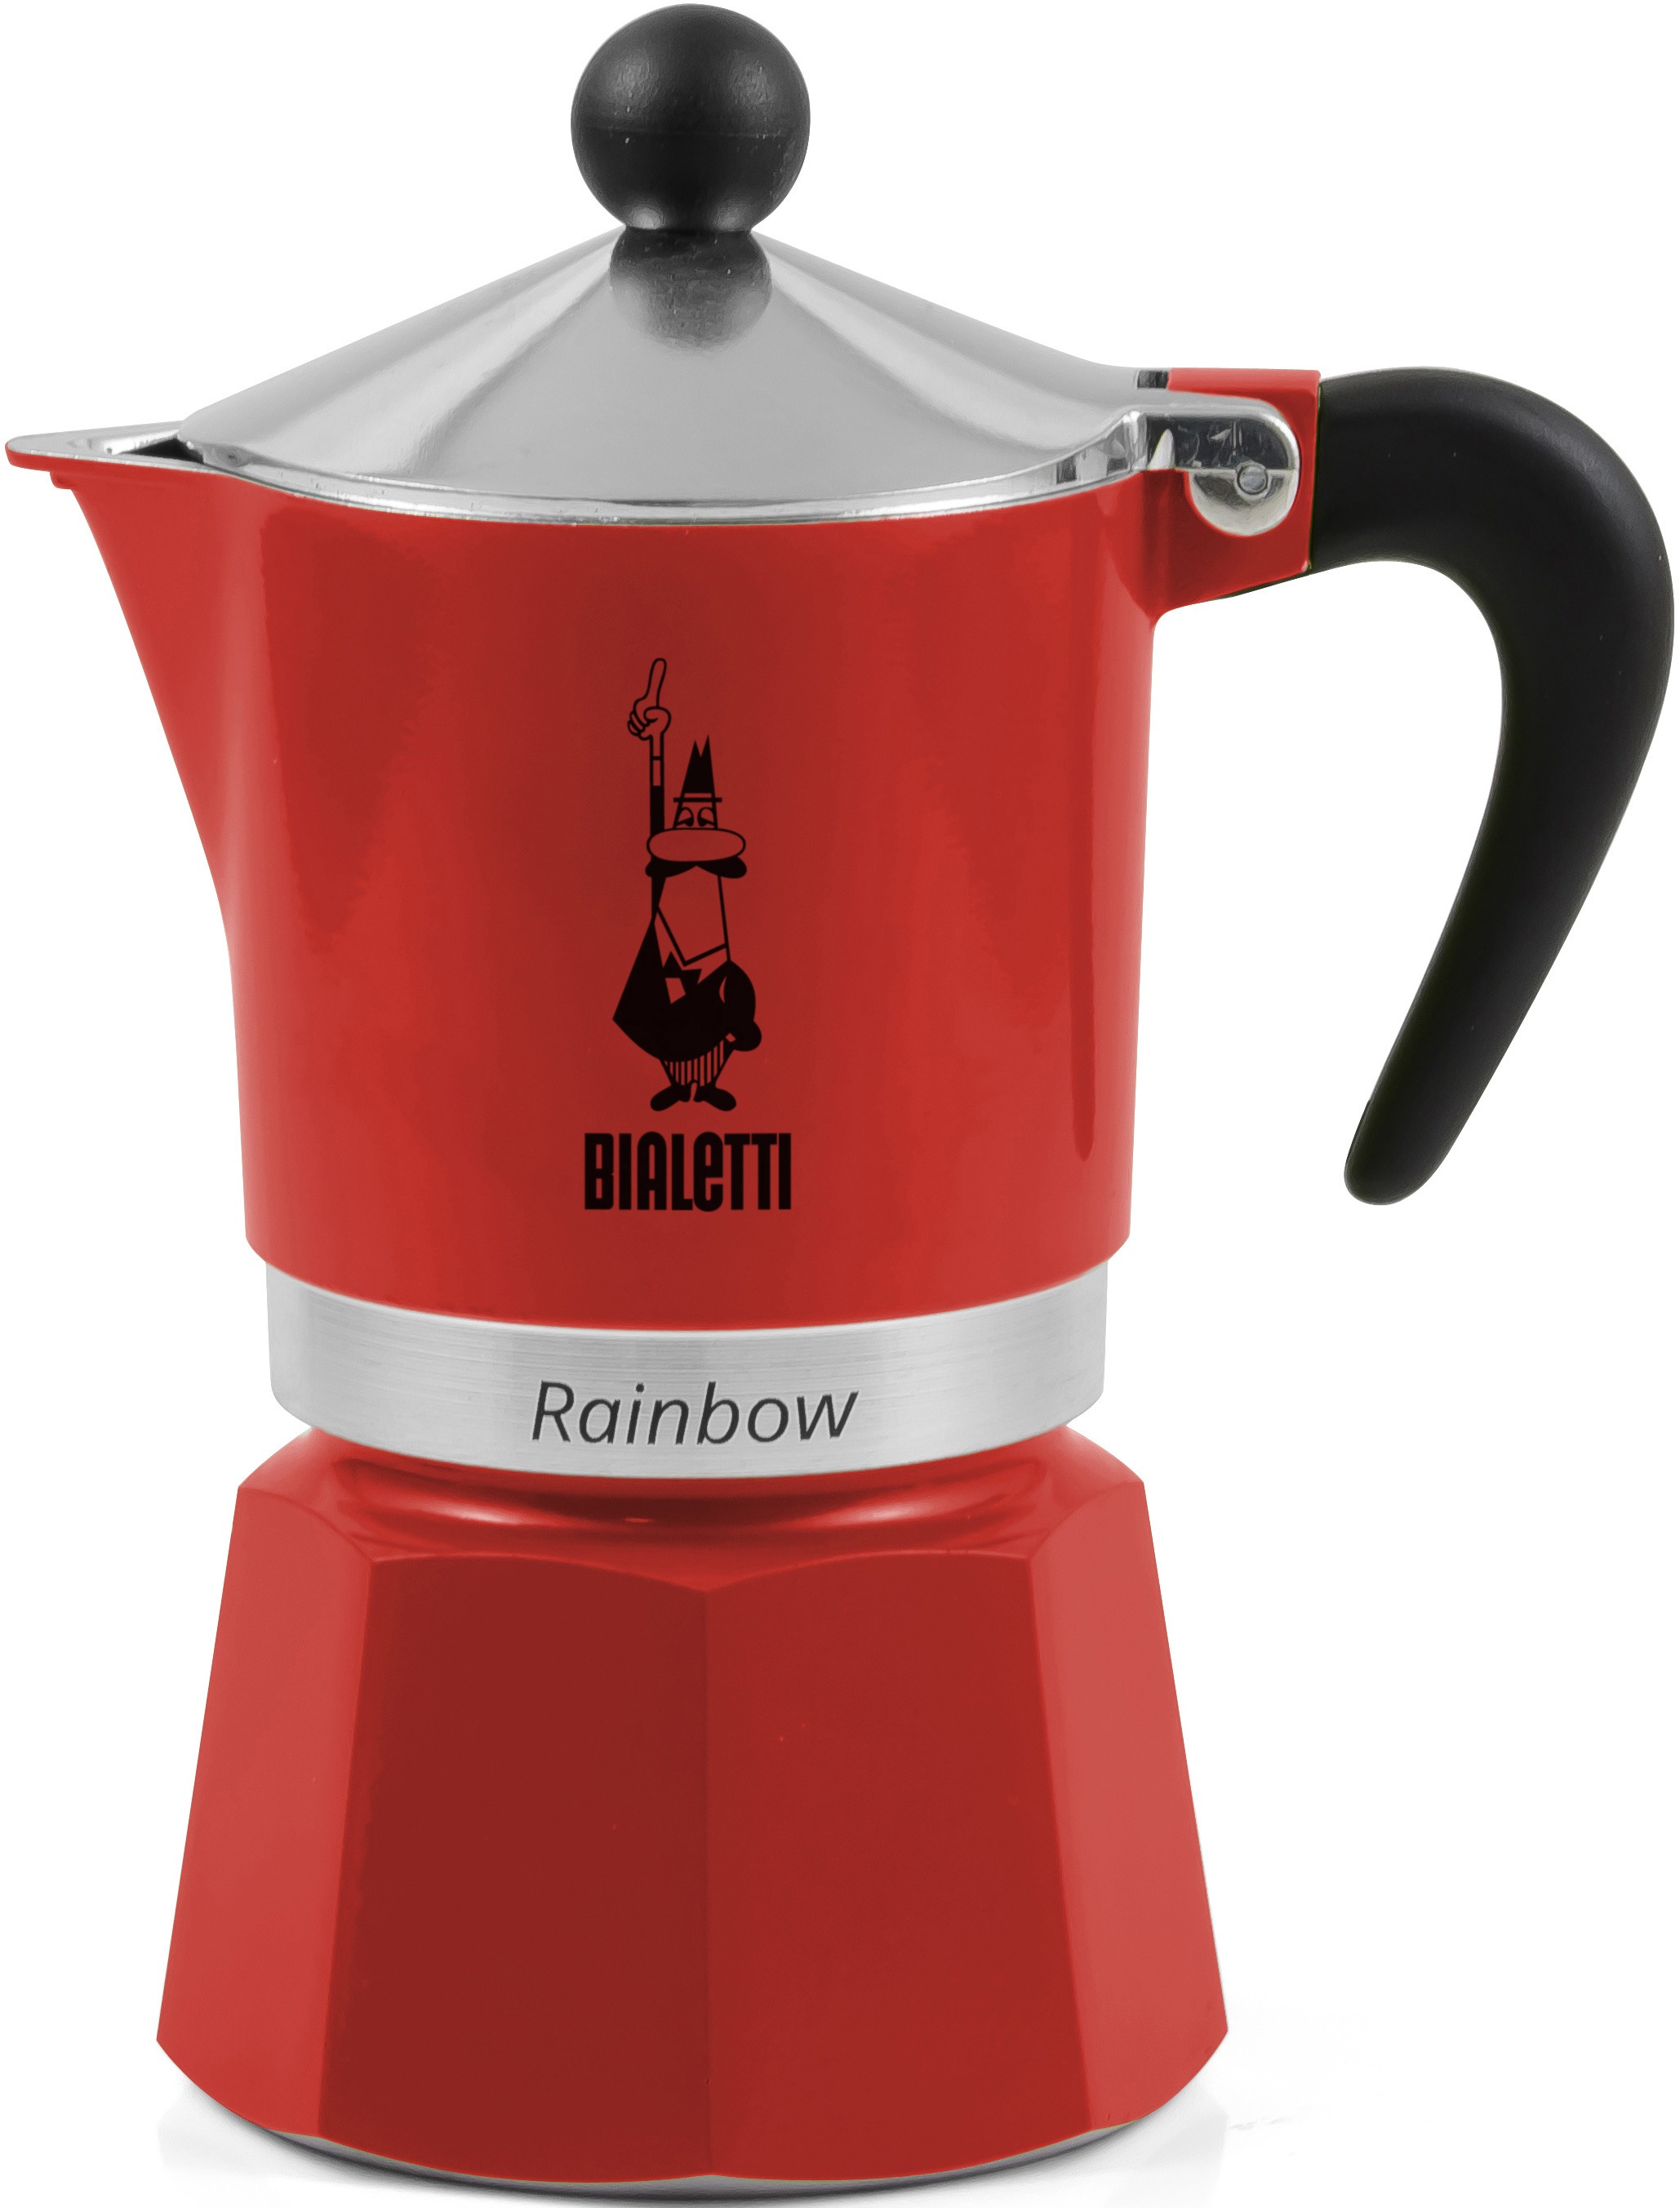 BIALETTI Espressokocher "Rainbow", 0,13 l Kaffeekanne